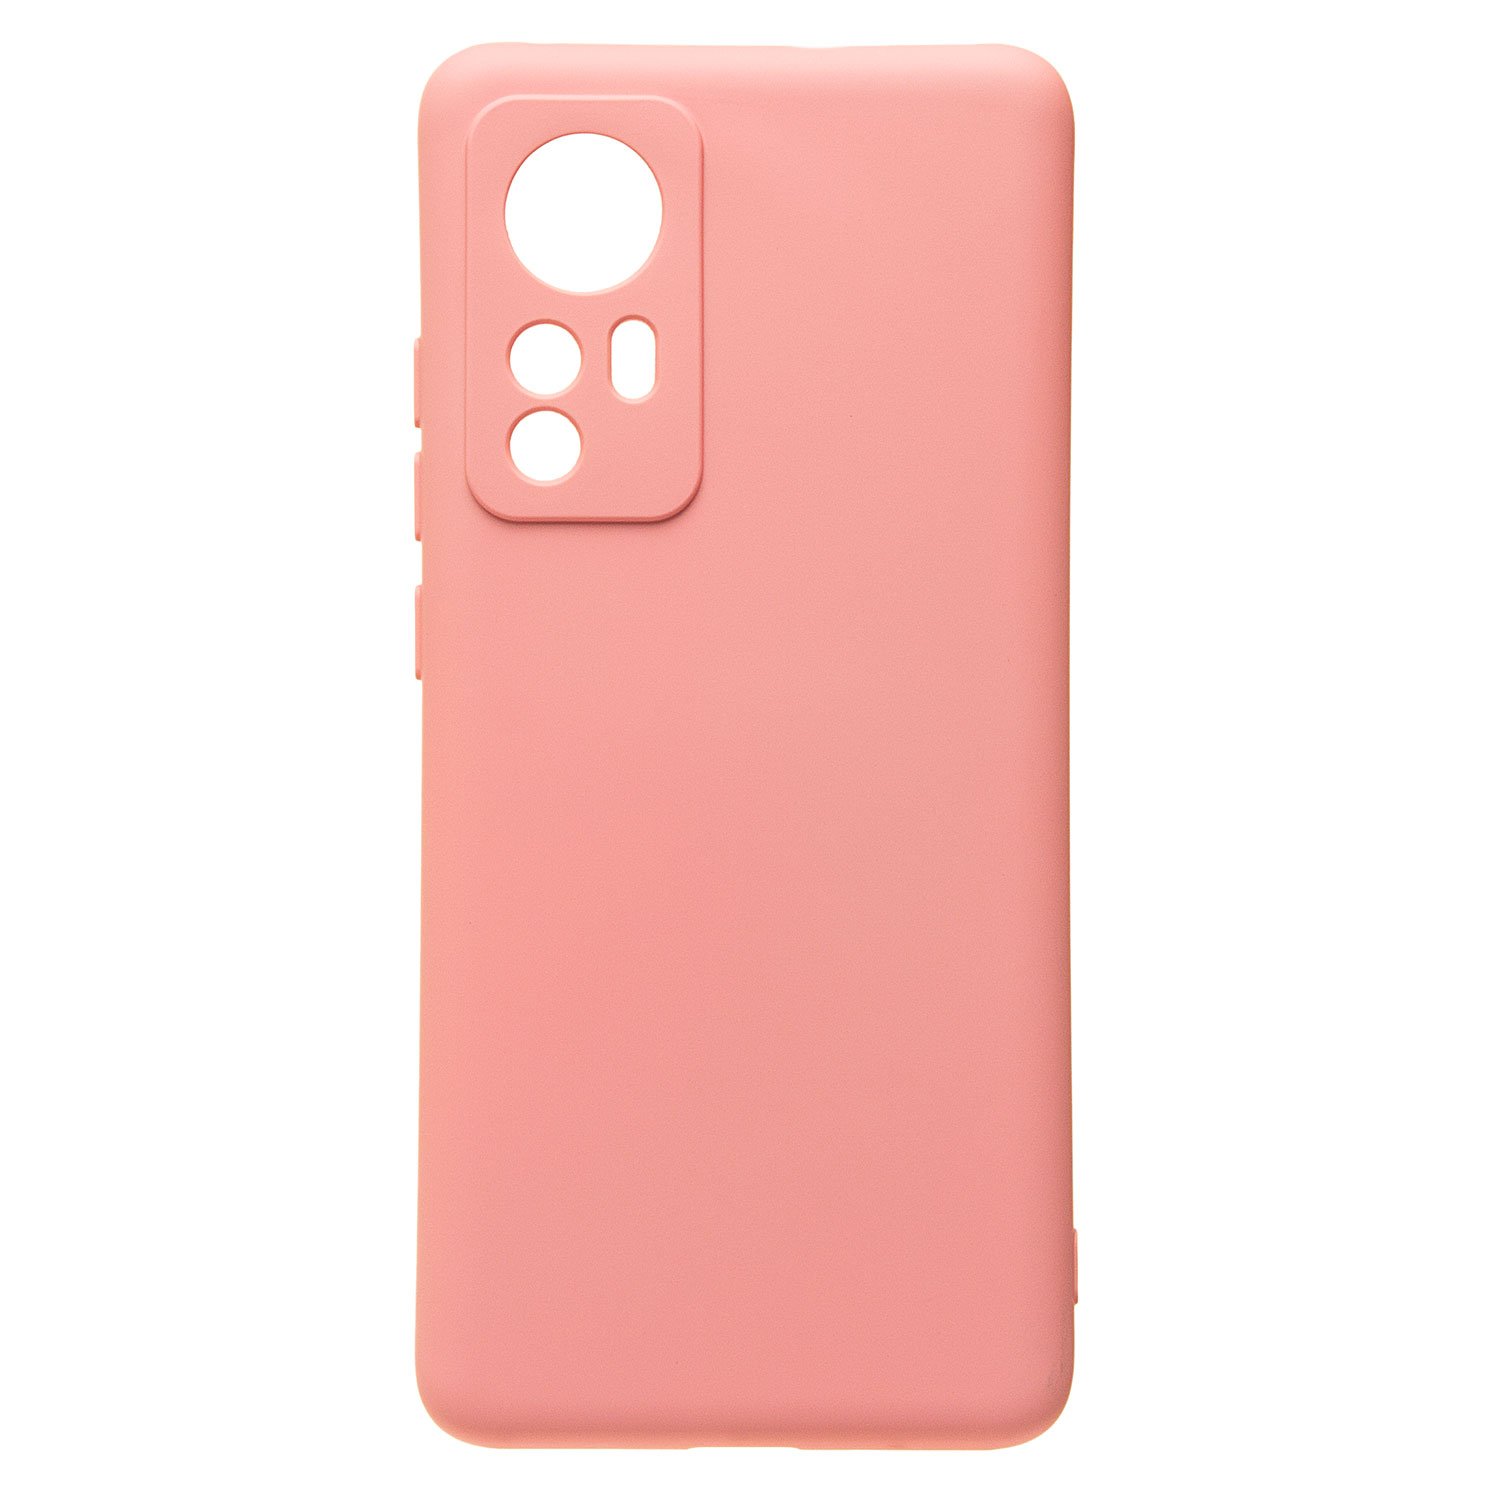 Чехол-накладка Activ Full Original Design для смартфона Xiaomi 12, силикон, светло-розовый (221030)